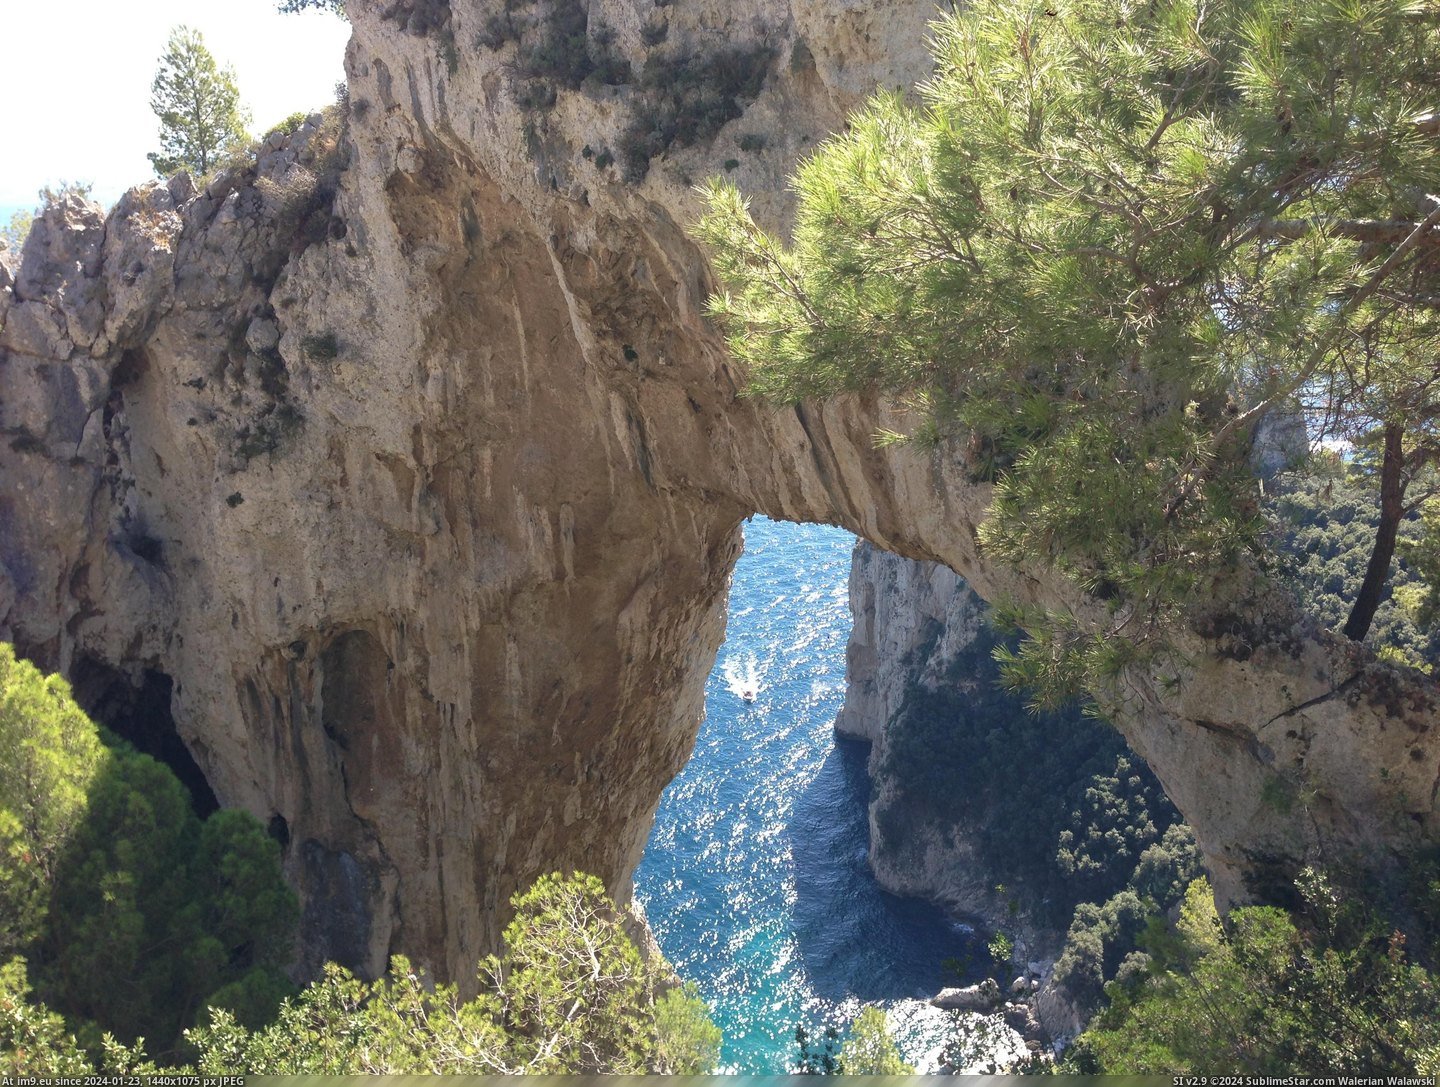 #Natural #Arch #Capri #Italy [Earthporn] Natural arch in Capri, Italy [3264 X 2448] [OC] Pic. (Bild von album My r/EARTHPORN favs))